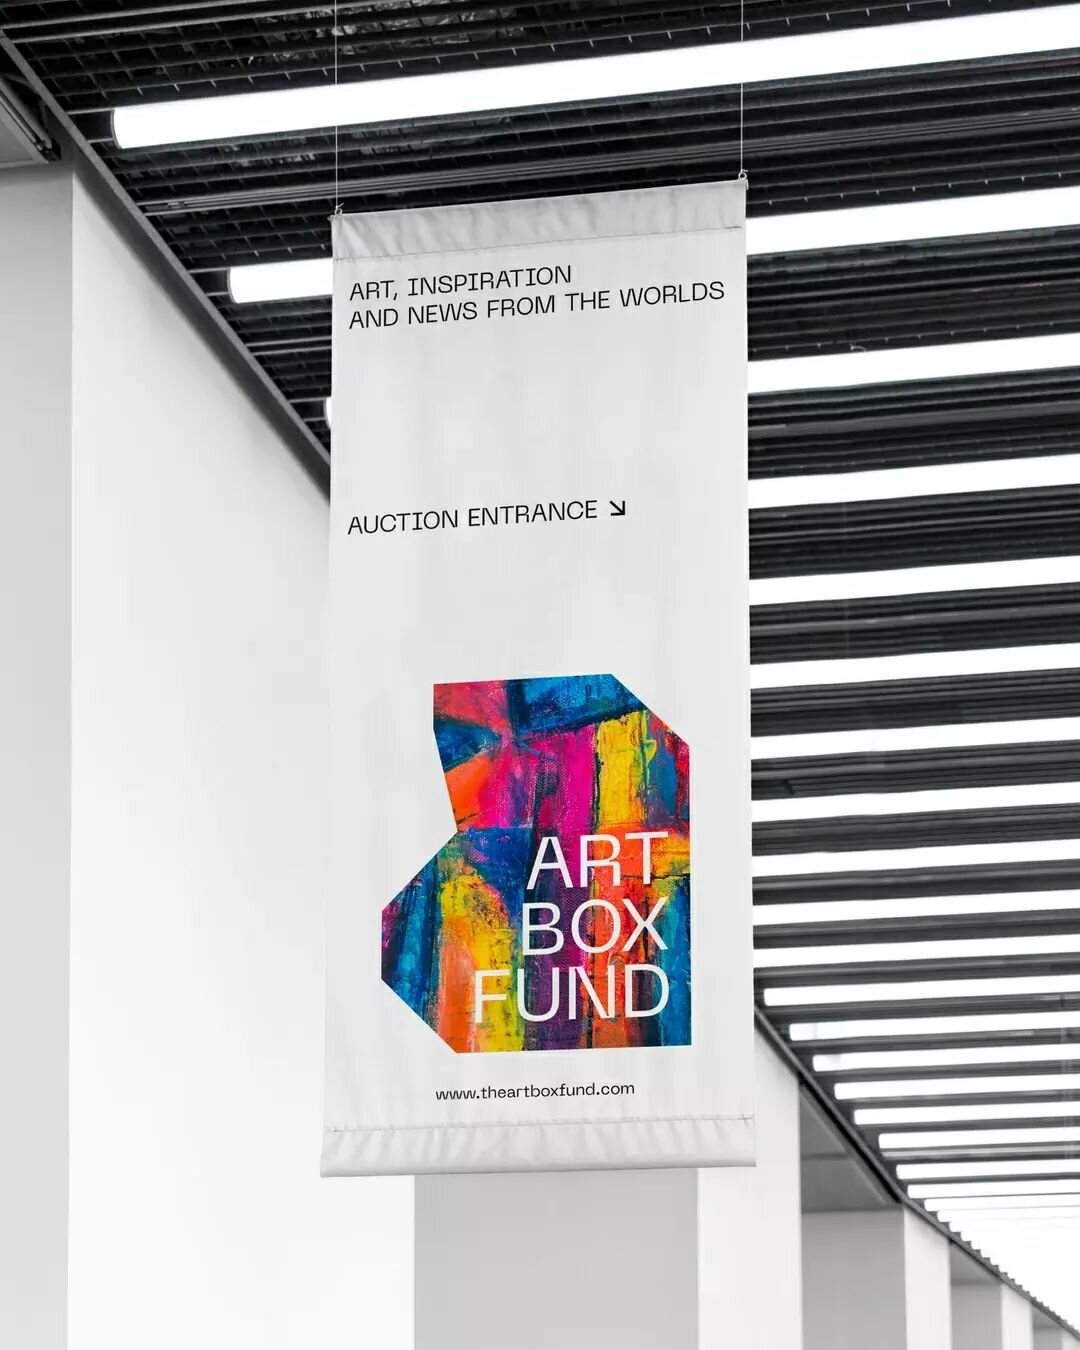 Diversify Artfully

FR &mdash; D&eacute;couvrez notre conception d'identit&eacute; visuelle pour Art Box Fund, une plateforme d'investissement sur le march&eacute; de l'art contemporain.

En investissant avec Art Box Fund, les investisseurs professio